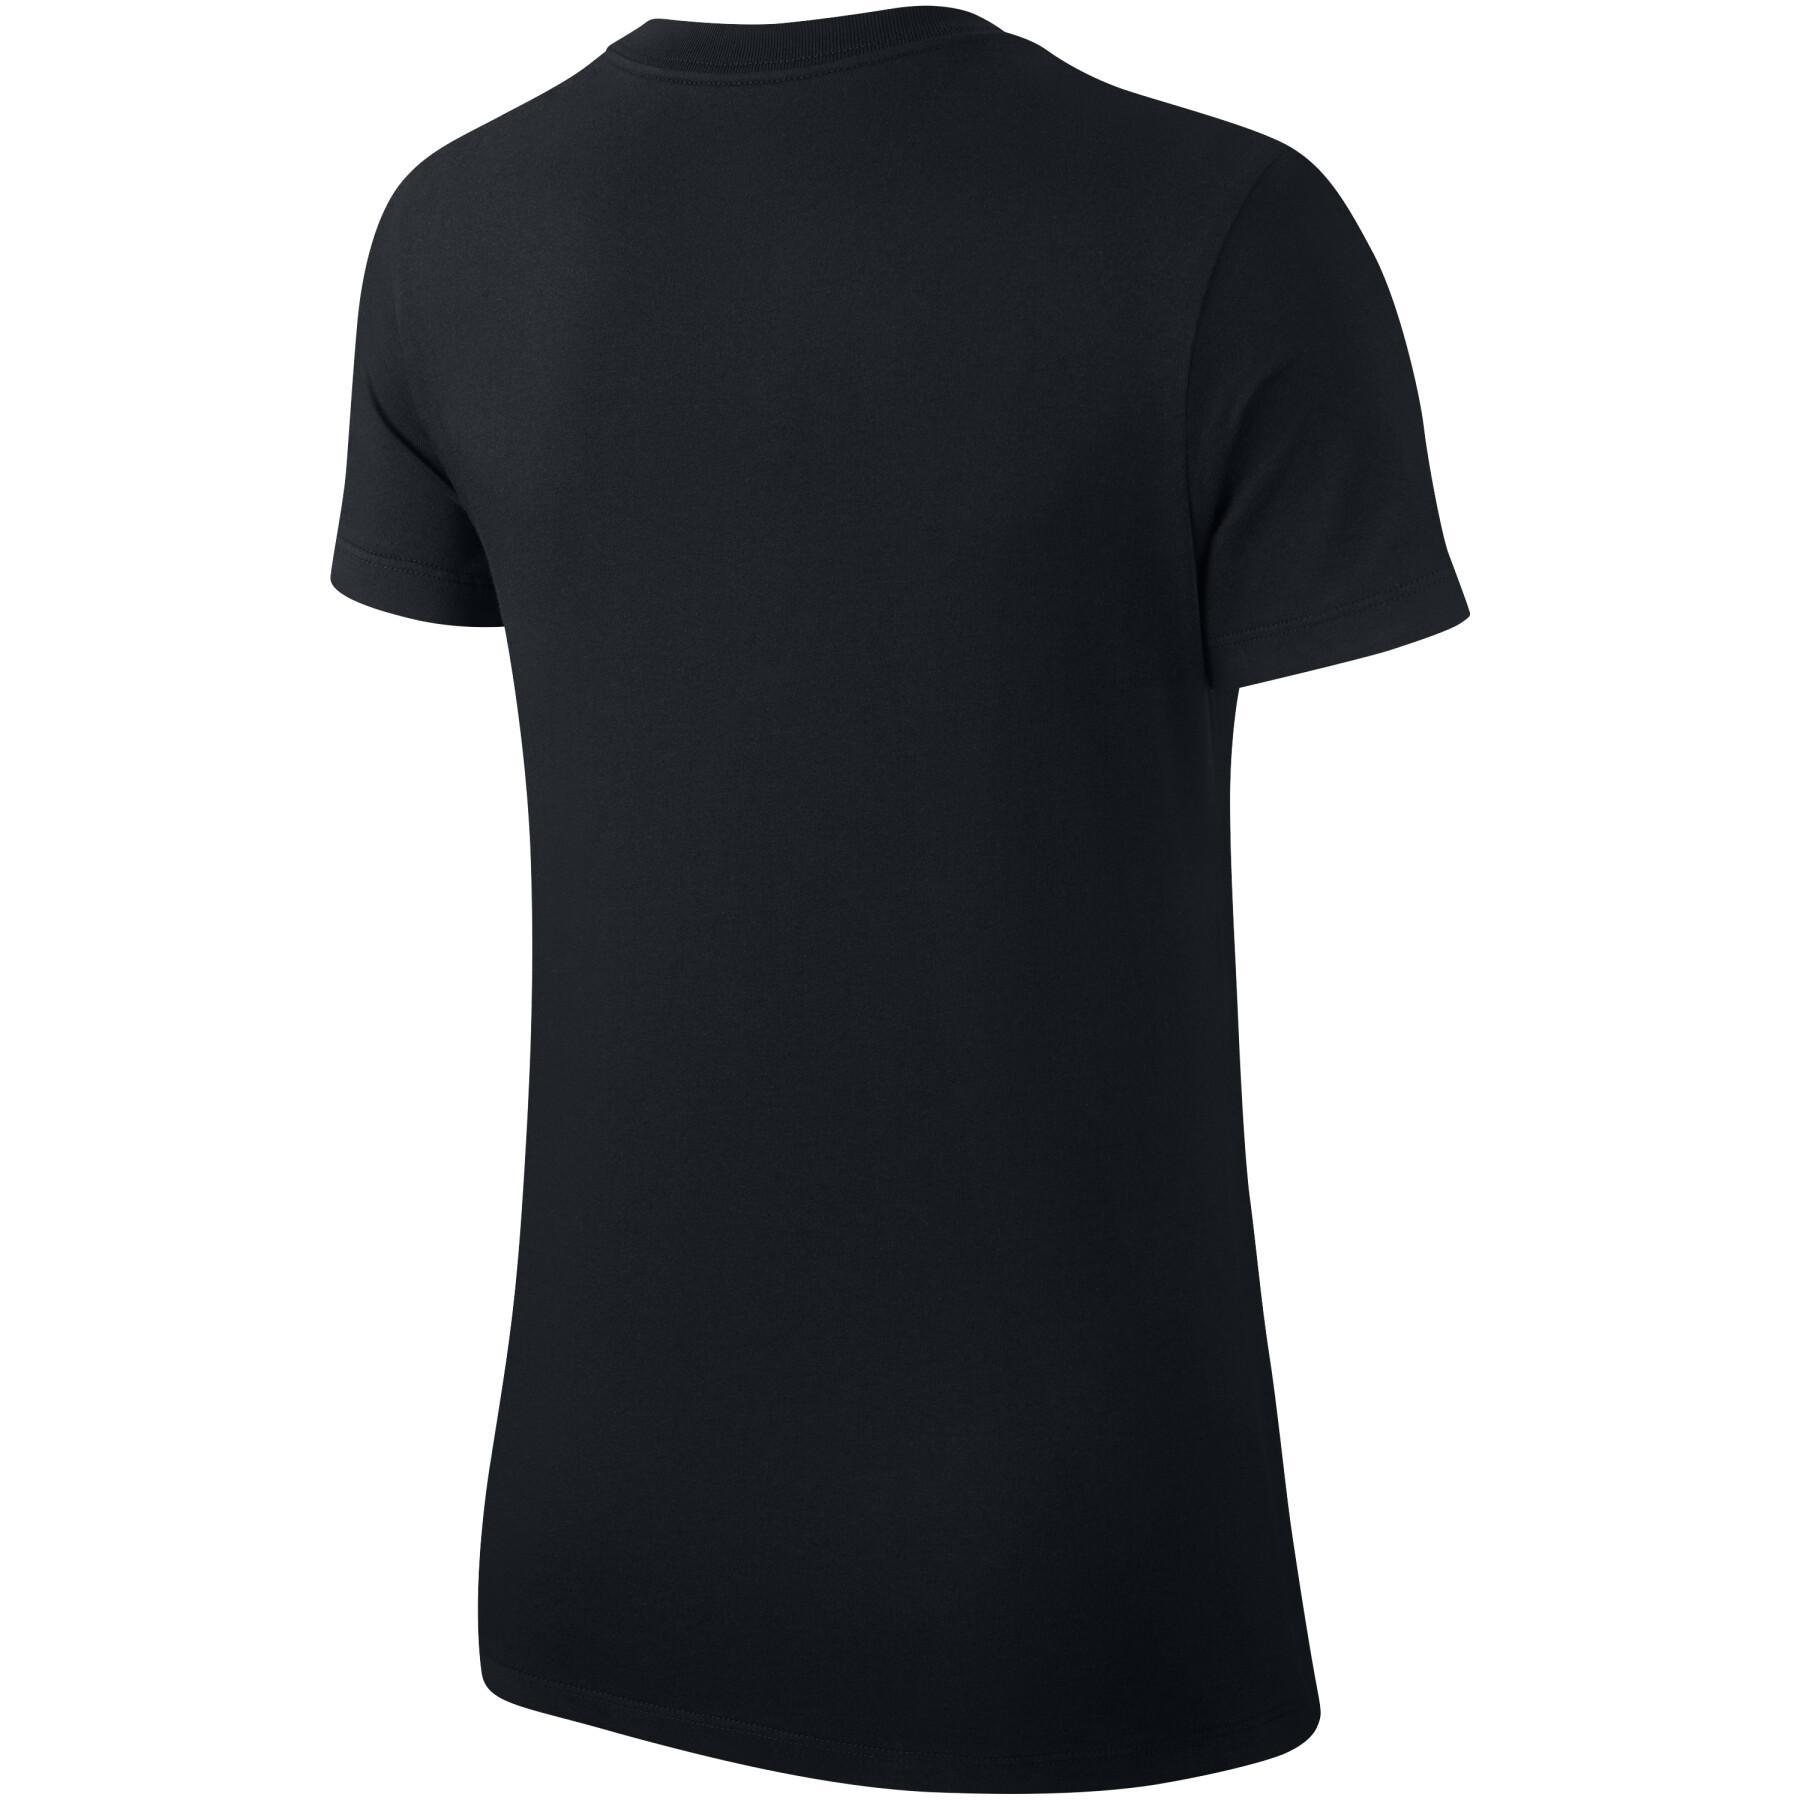 T-shirt femme Nike sportswear essential